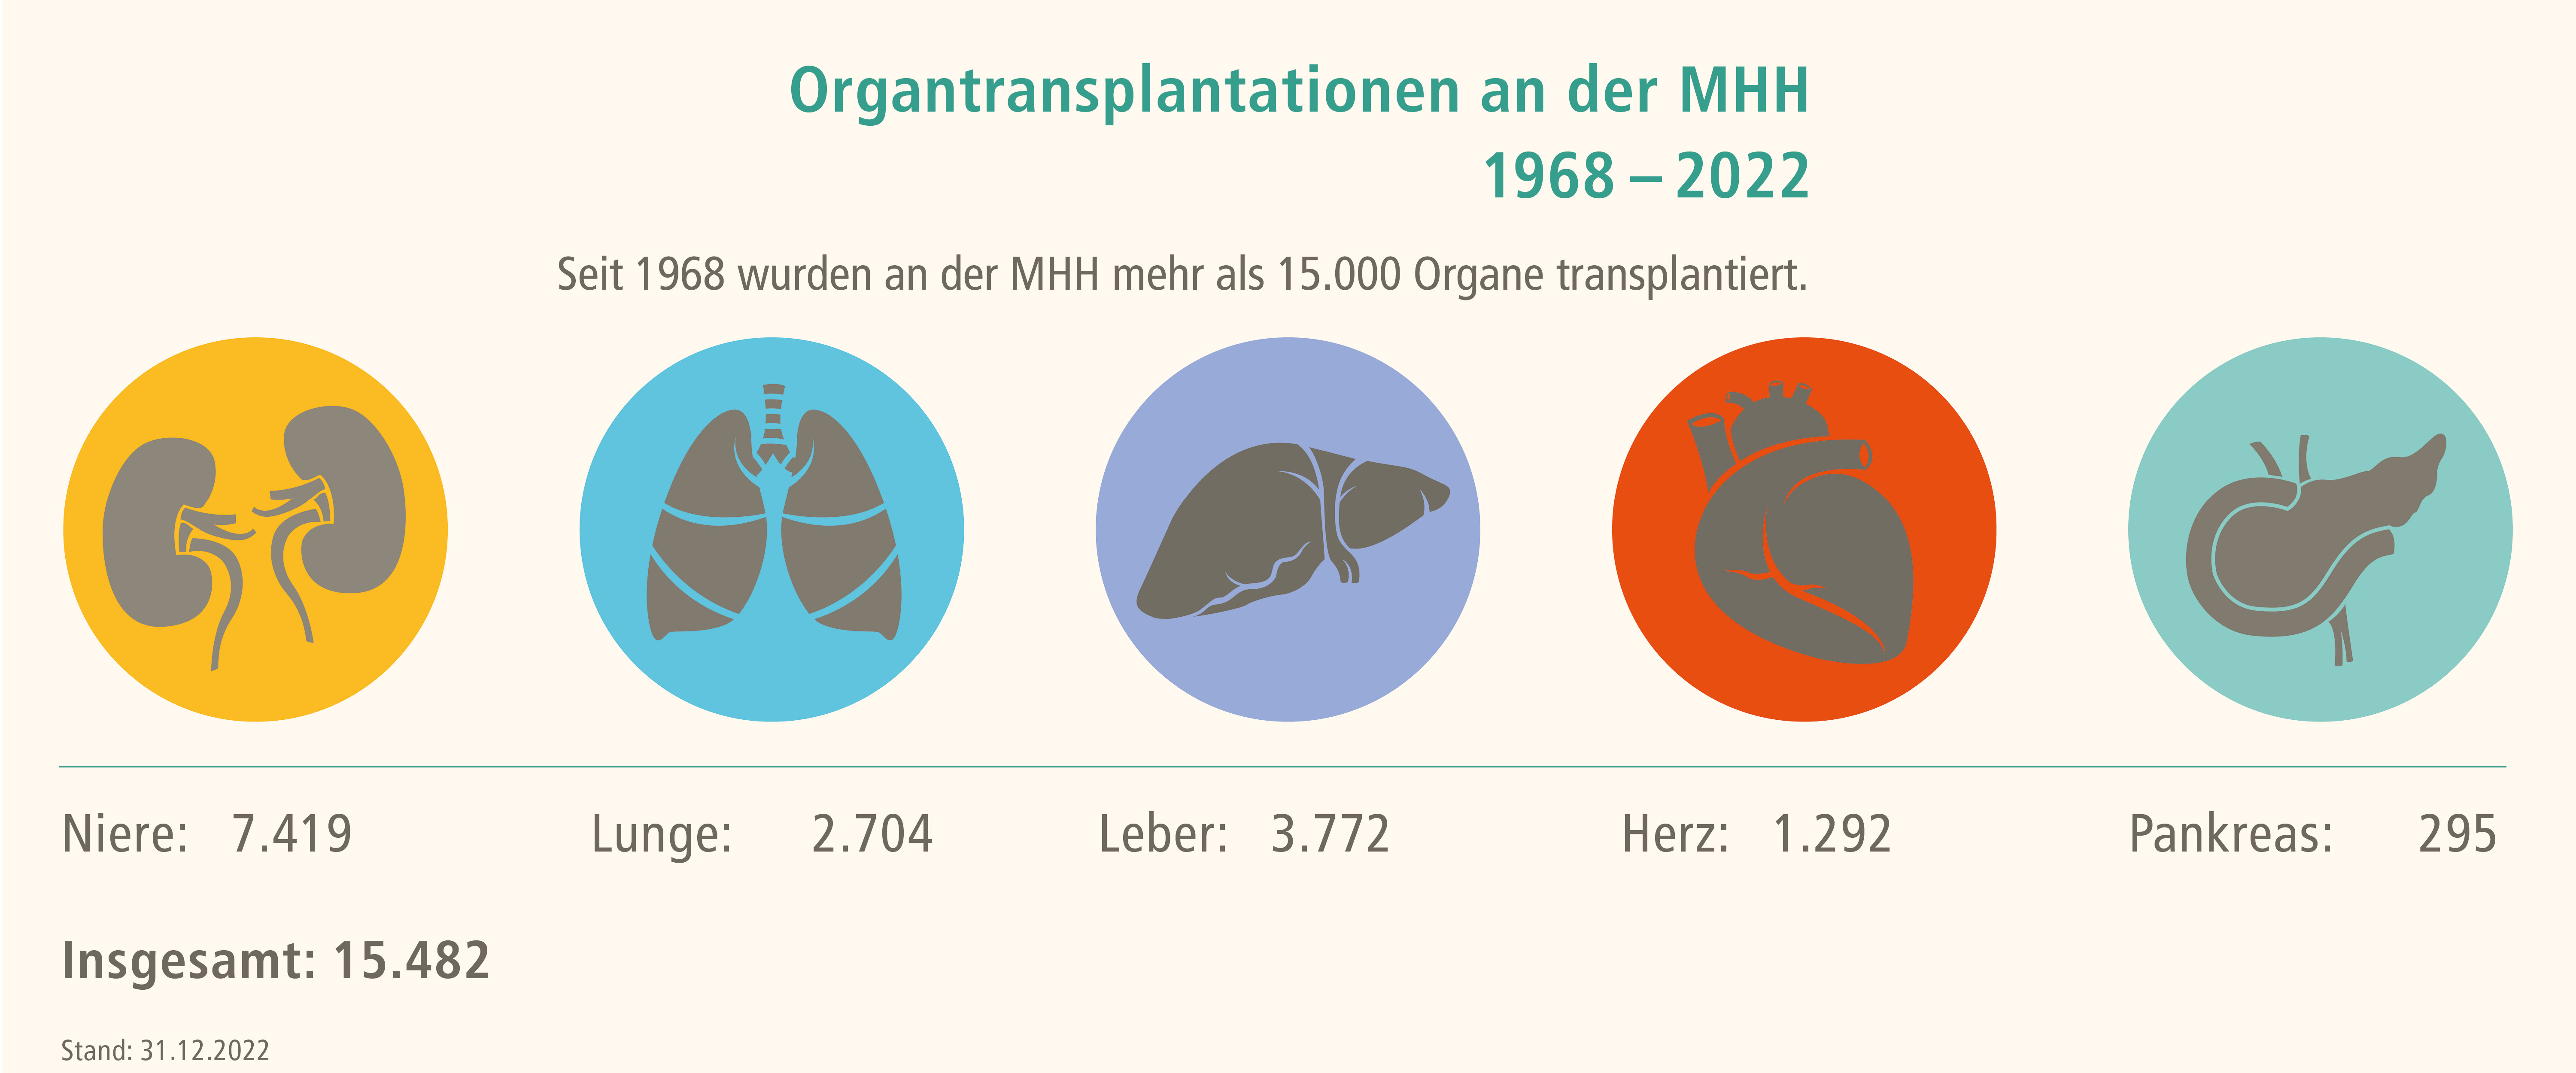 Seit 1968 wurden an der MHH mehr als 15.000 Organe transplantiert.7.419 Nieren, 2.704 Lungen, 3.772 Lebern, 1.292 Herzen und 295 Bauspeicheldrüsen. Ende 2022 waren es insgesamt 15.482 Organe. Copyright: MHH-Transplantationszentrum  